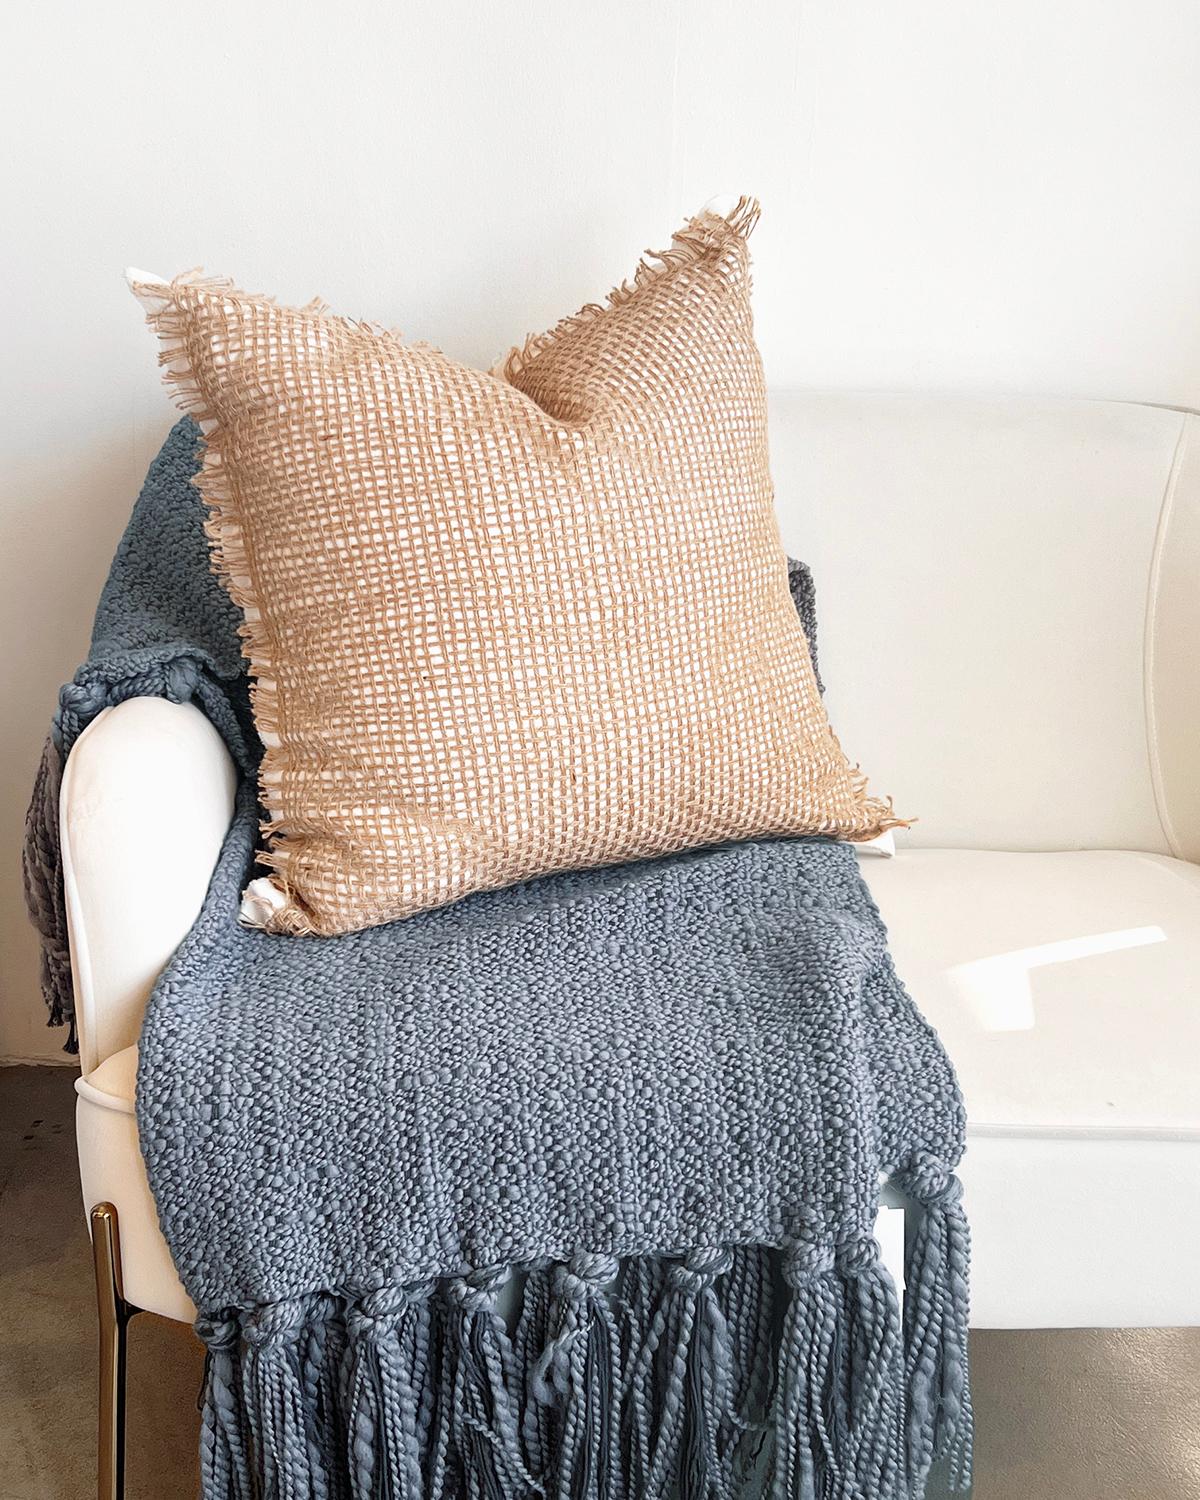 Ein rustikales Kissen für Ihre Couch. Verleihen Sie Ihrer Einrichtung einen Hauch von rustikalem Charme mit unserem Tramas Leinen & Jute Kissen. Mit seiner offenen Webart aus Leinen und Jute ist dieses Kissen perfekt für jede Couch, jeden Stuhl oder